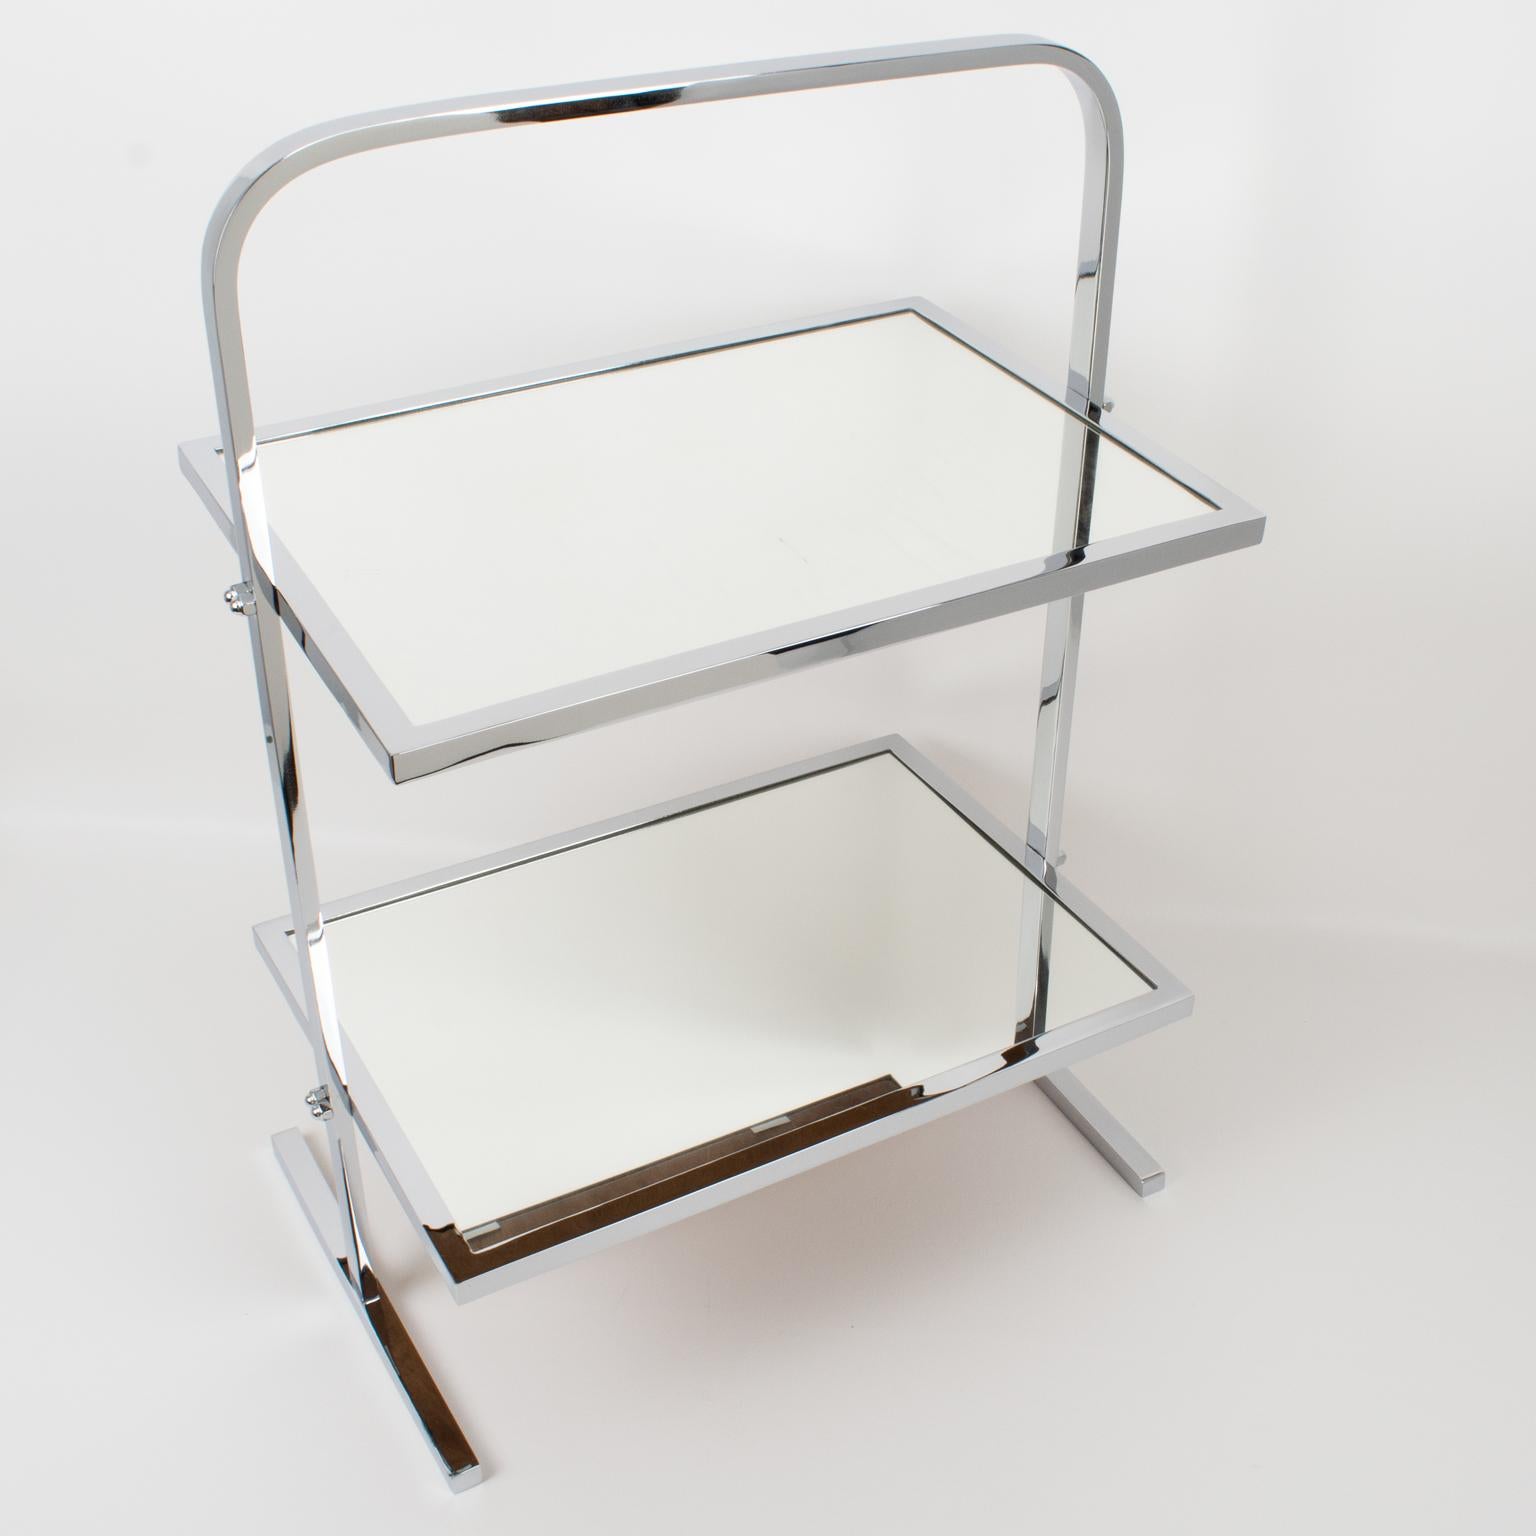 Jacques Adnet (1901 - 1984) a conçu cette rare table basse ou table d'appoint Art déco dans les années 1930. Le design minimaliste chic présente une forme rectangulaire à deux plateaux avec une haute poignée géométrique. La table est en métal chromé